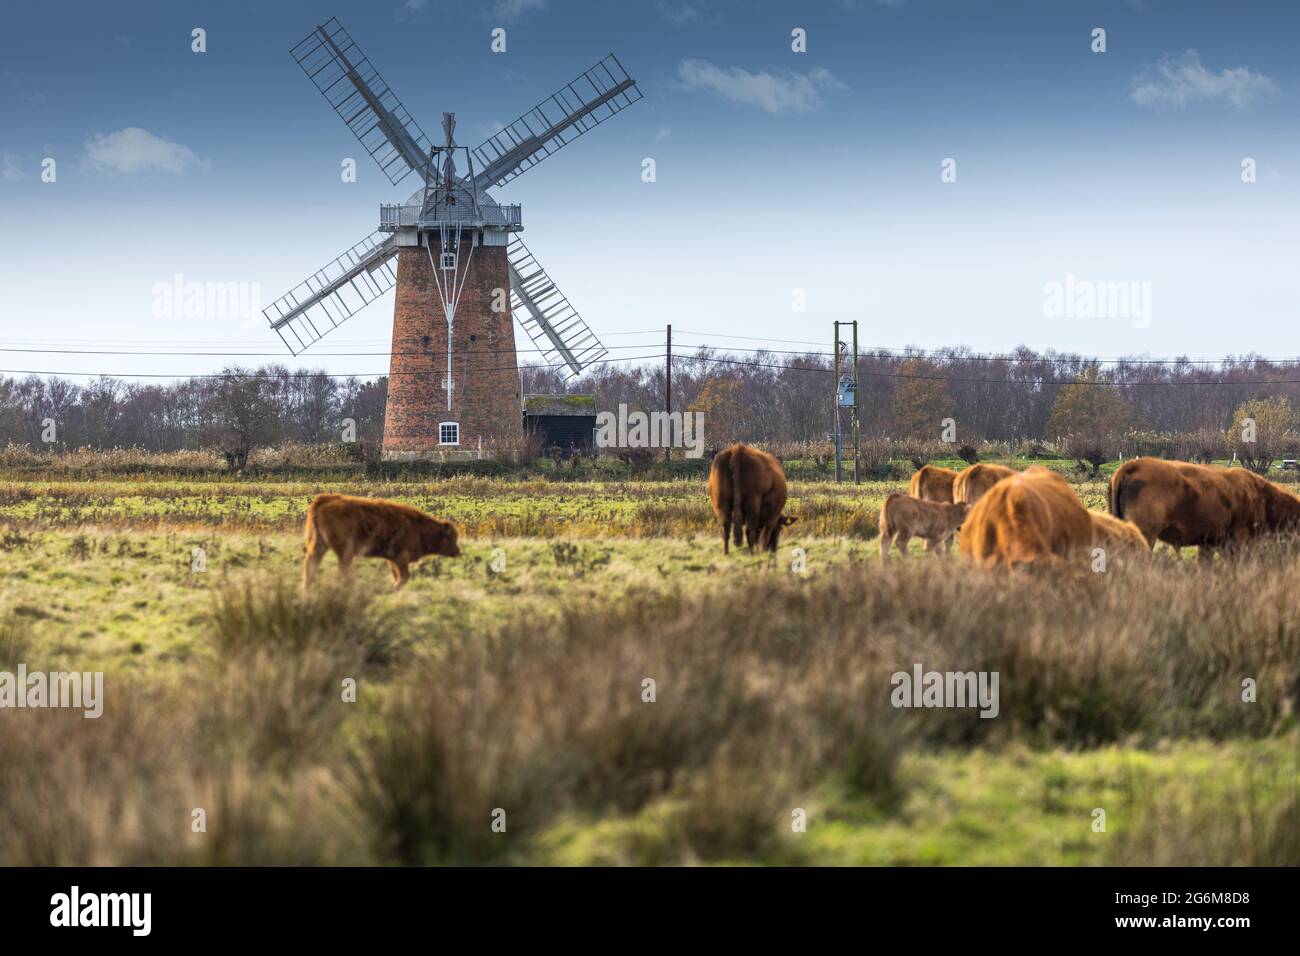 Horsey Windpump eine Windpumpe oder Drainage-Windmühle, die vom National Trust in Horsey, auf den Broads in der Nähe von Great Yarmouth, Norfolk, England, betreut wird Stockfoto